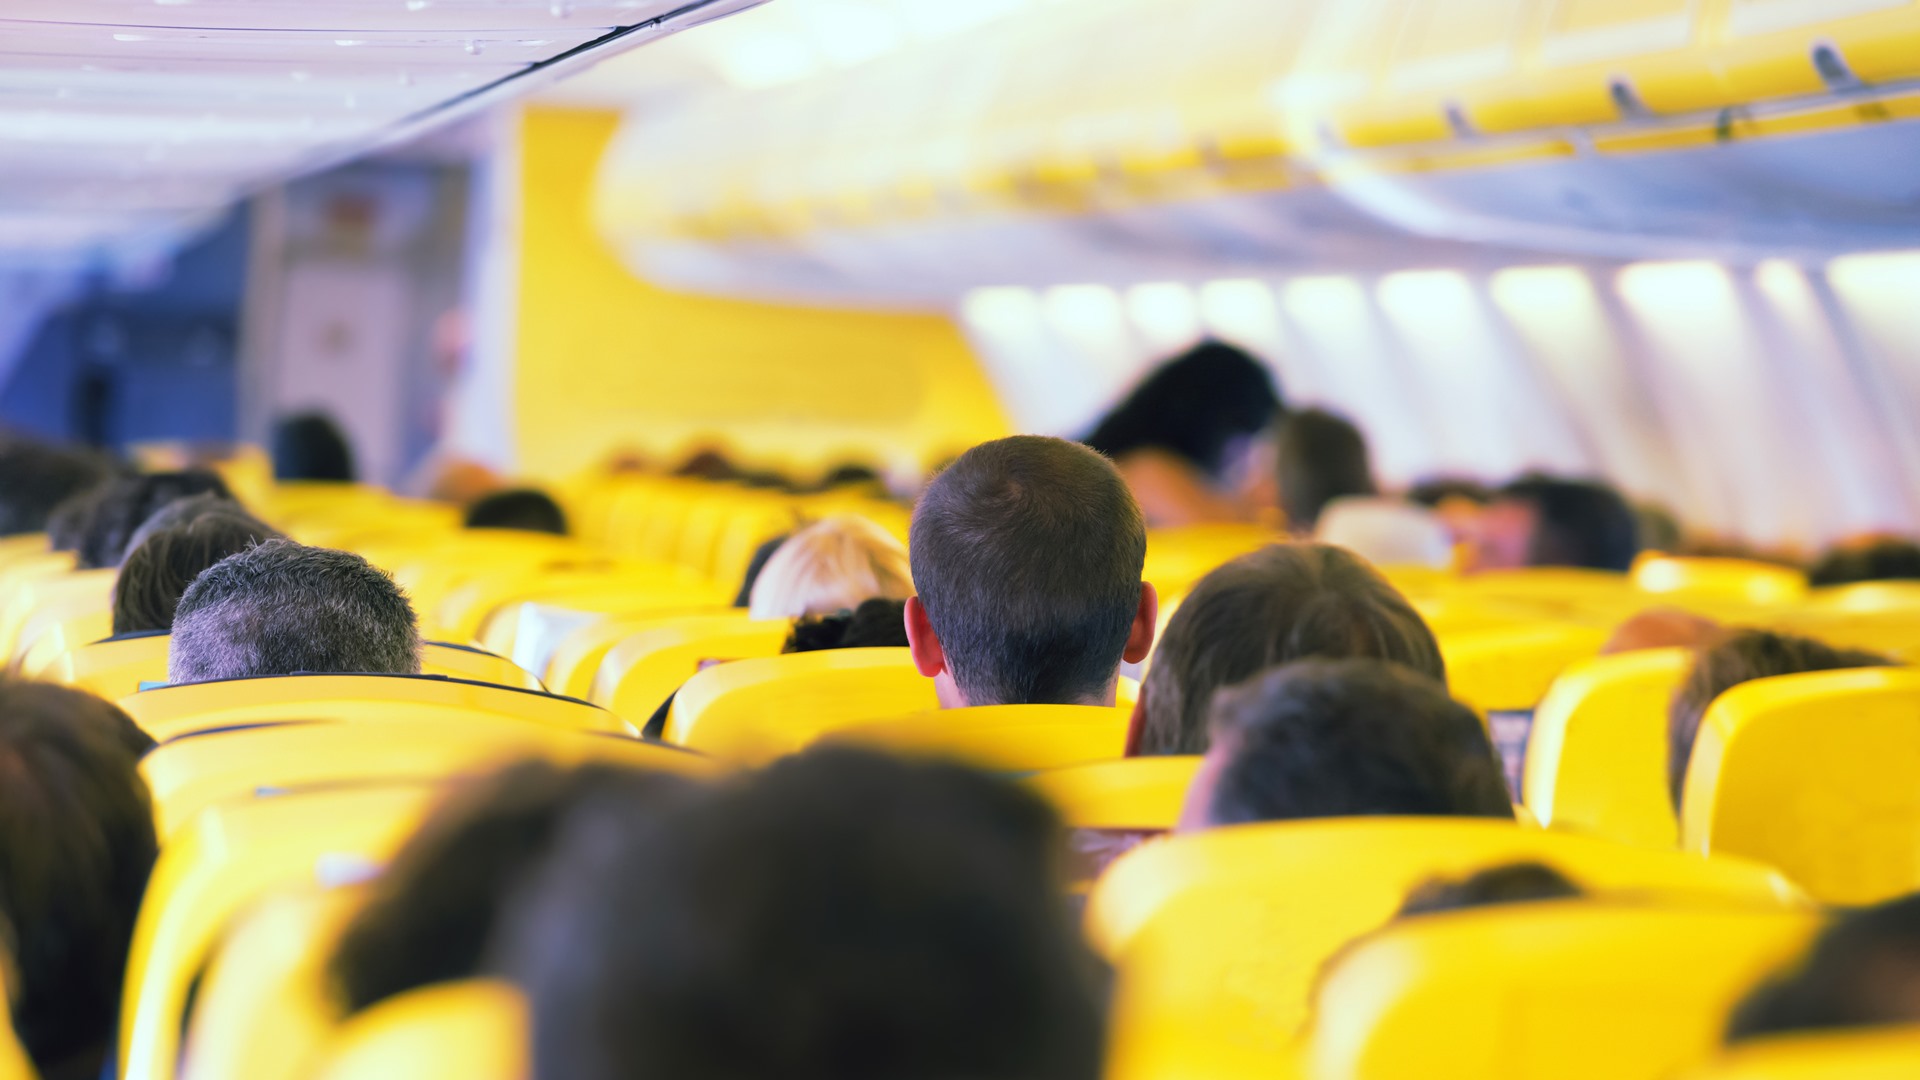 Aisle inside a plane